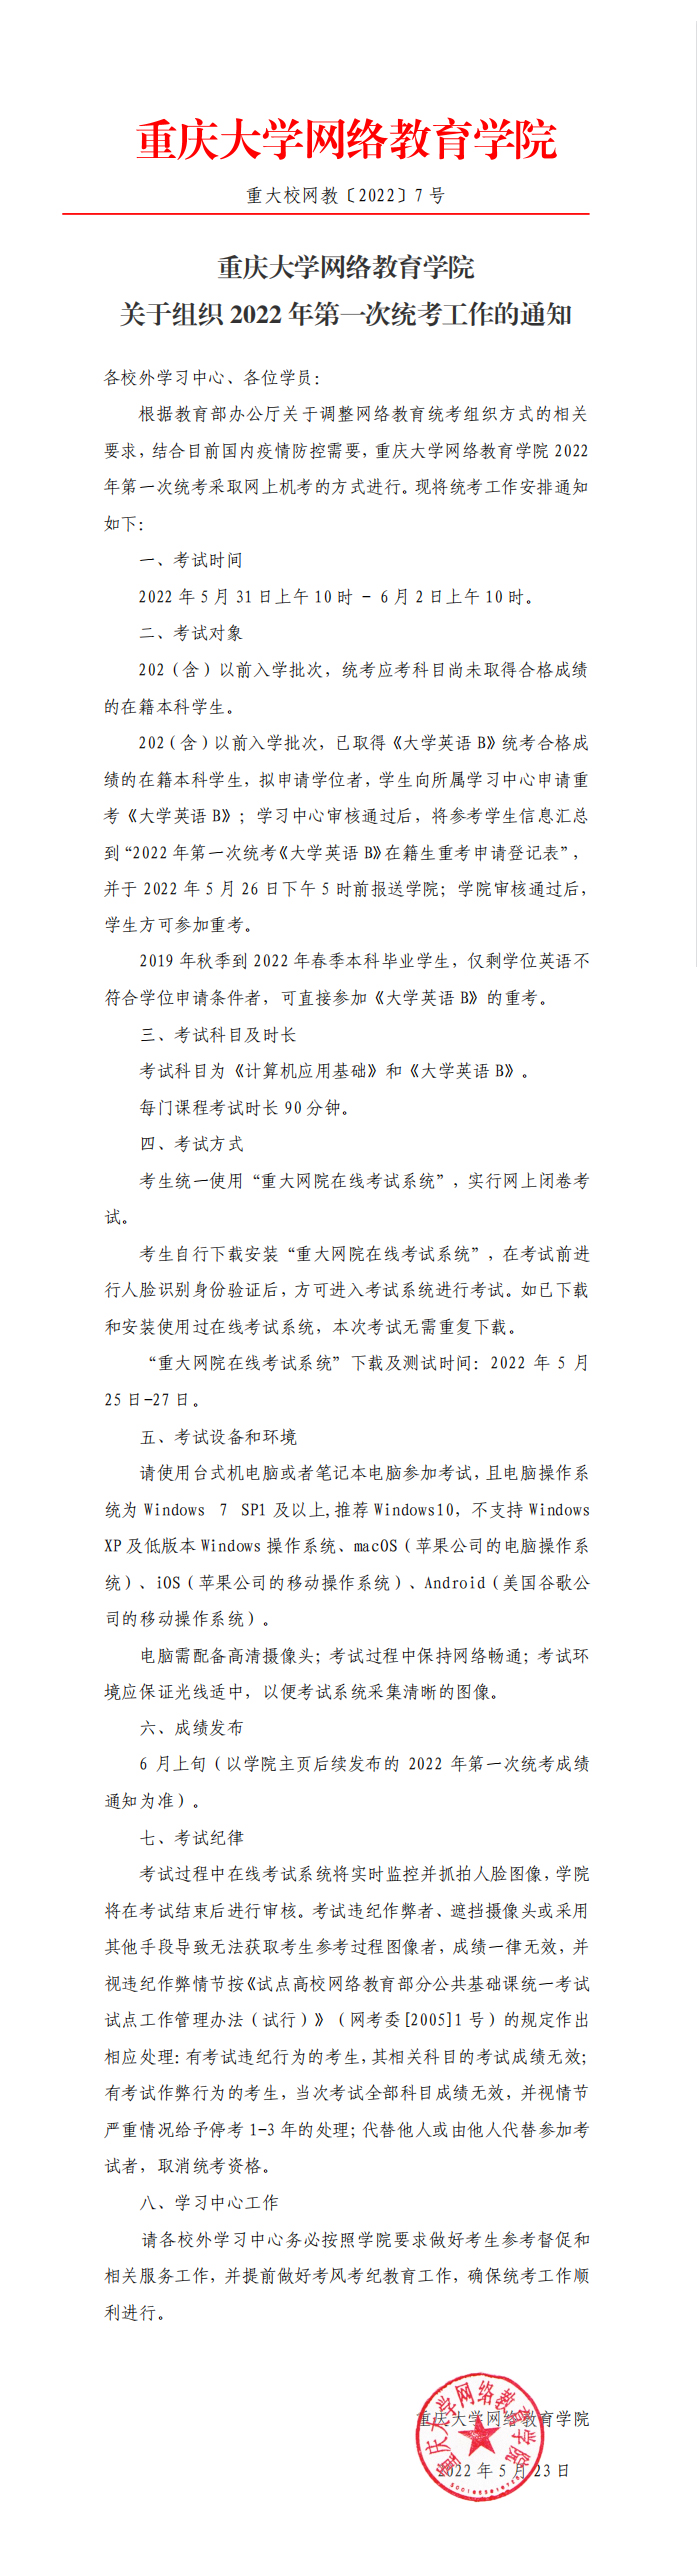 重庆大学网络教育学院关于组织2022年第一次统考工作的通知.jpg